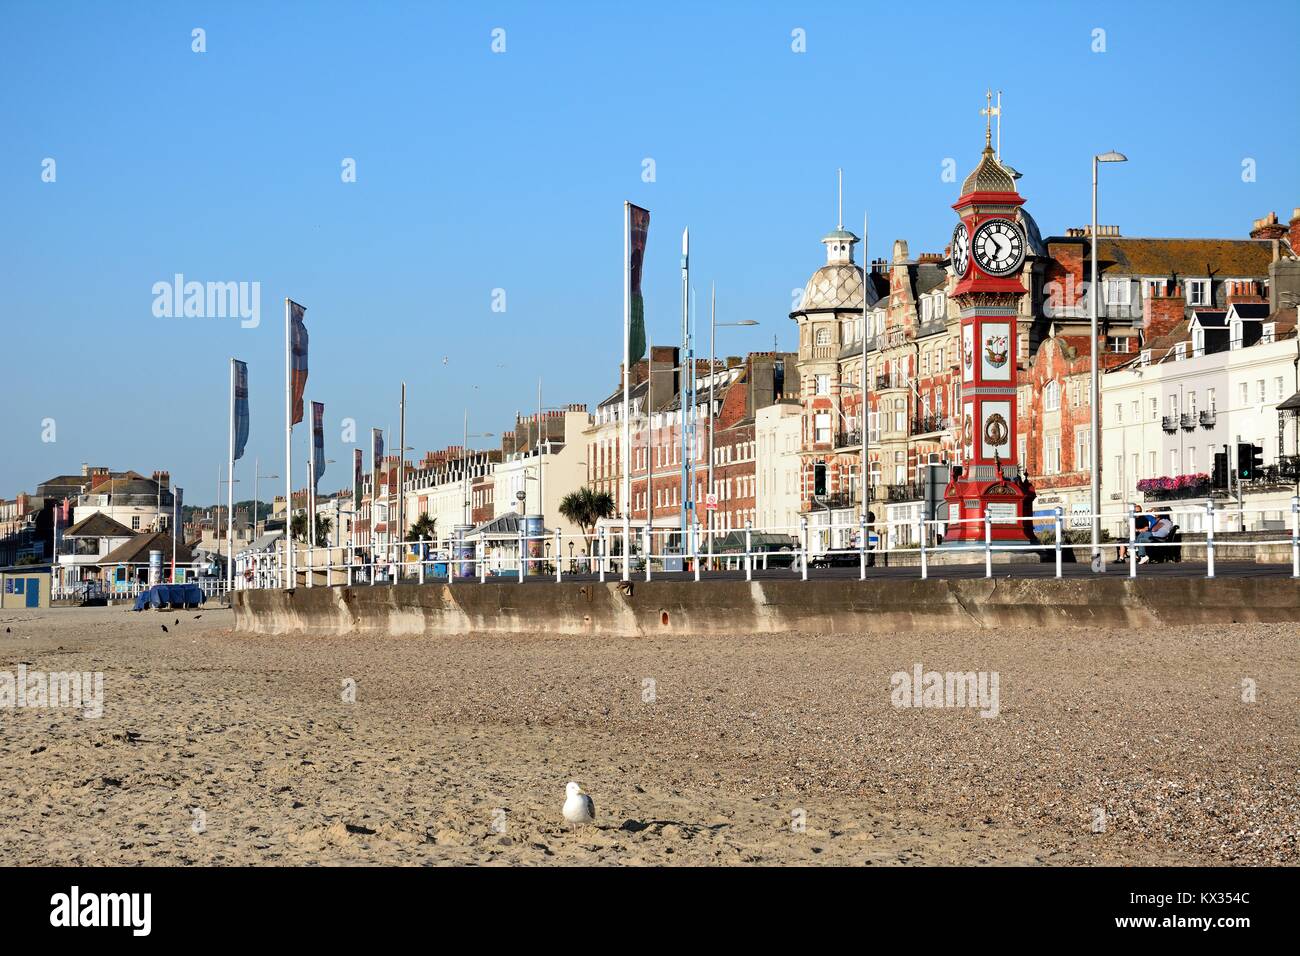 Entlang des Strandes in Richtung Promenade-Gebäude in den frühen Morgenstunden, Weymouth, Dorset, England, Vereinigtes Königreich, West-Europa anzeigen Stockfoto